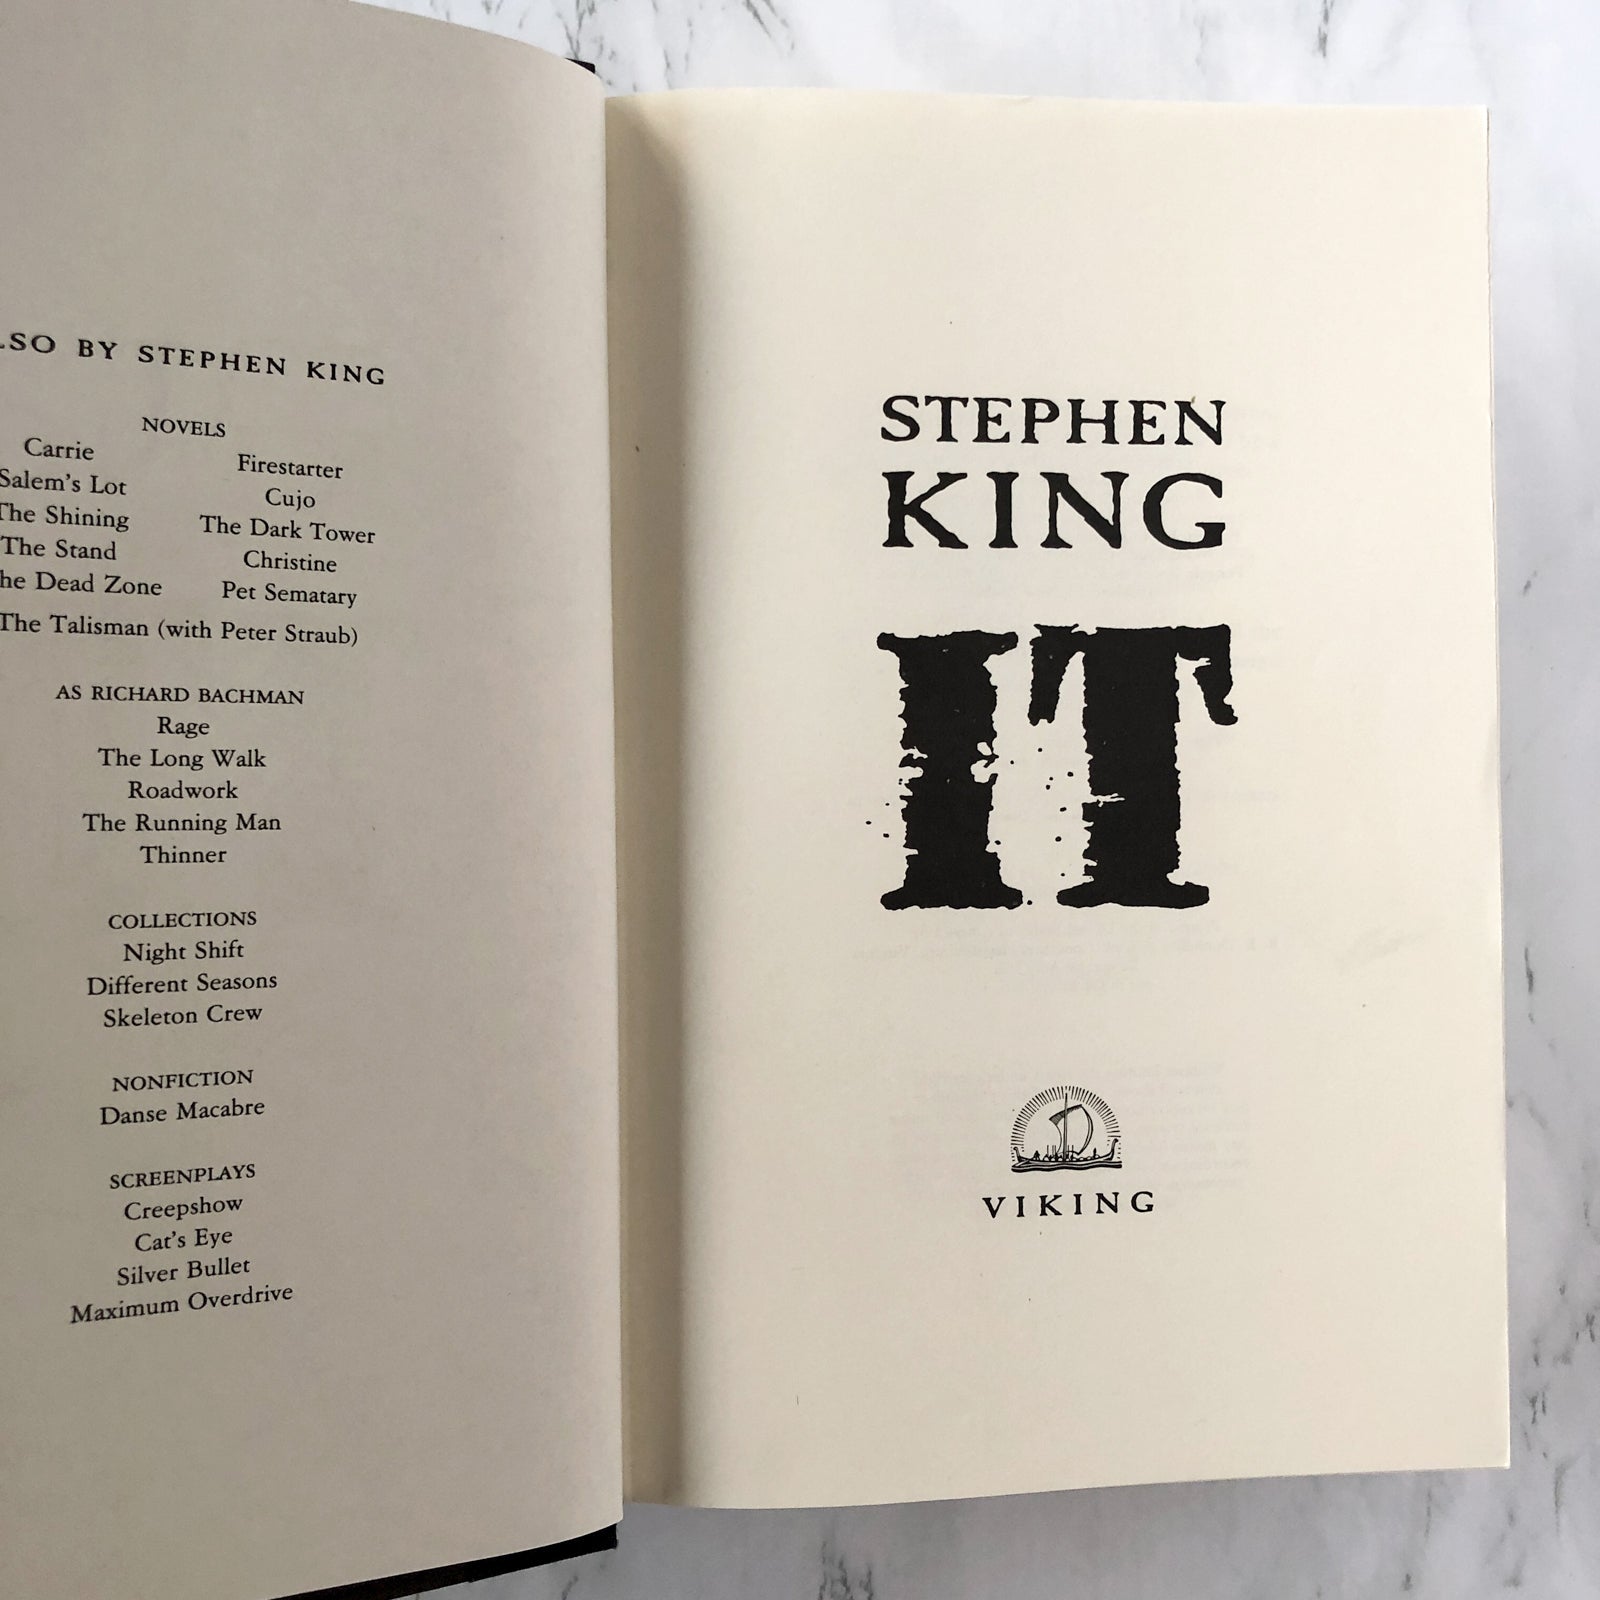 1° Edición. It, Stephen King.